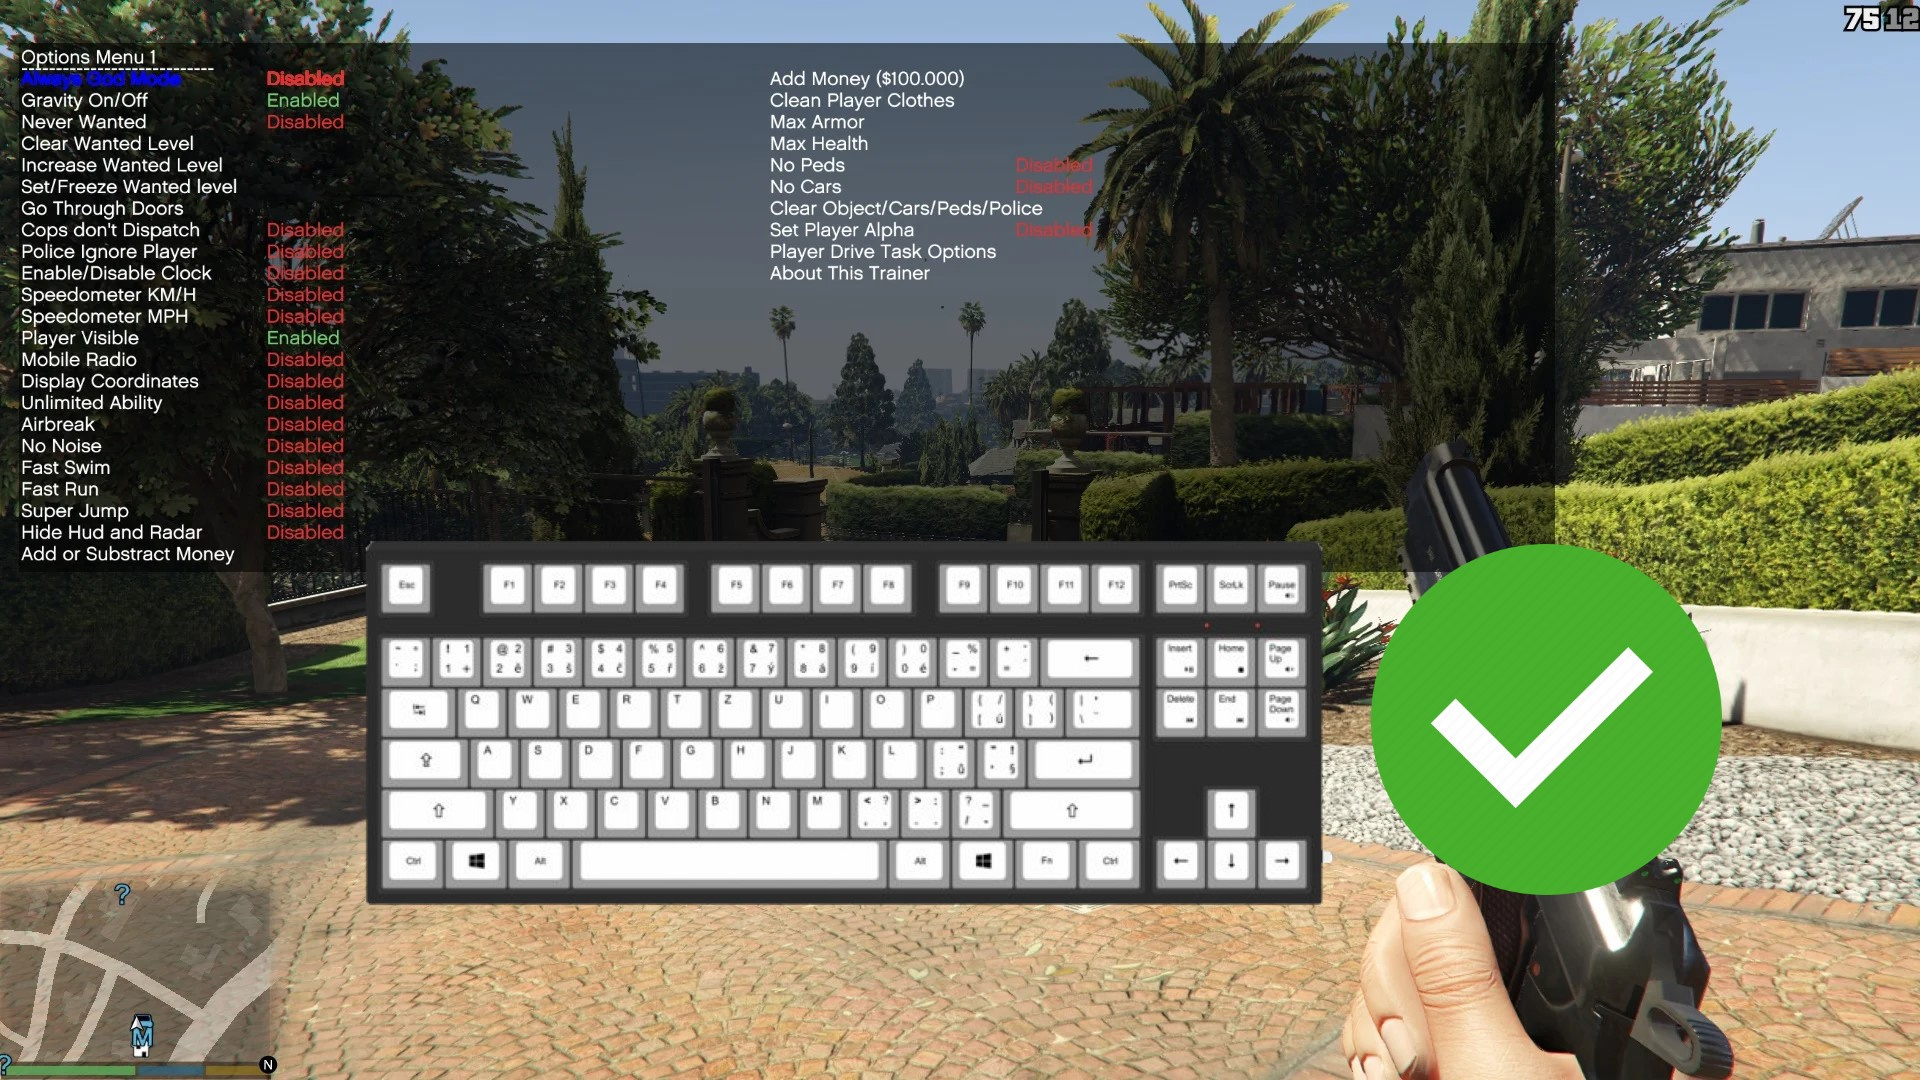 Gamer Poser - CHEATS GTA V PC Para ativar os códigos: - Aperte a seta do  teclado para cima - Aperte a barra de espaço - Digite o cheats que achar  legal 